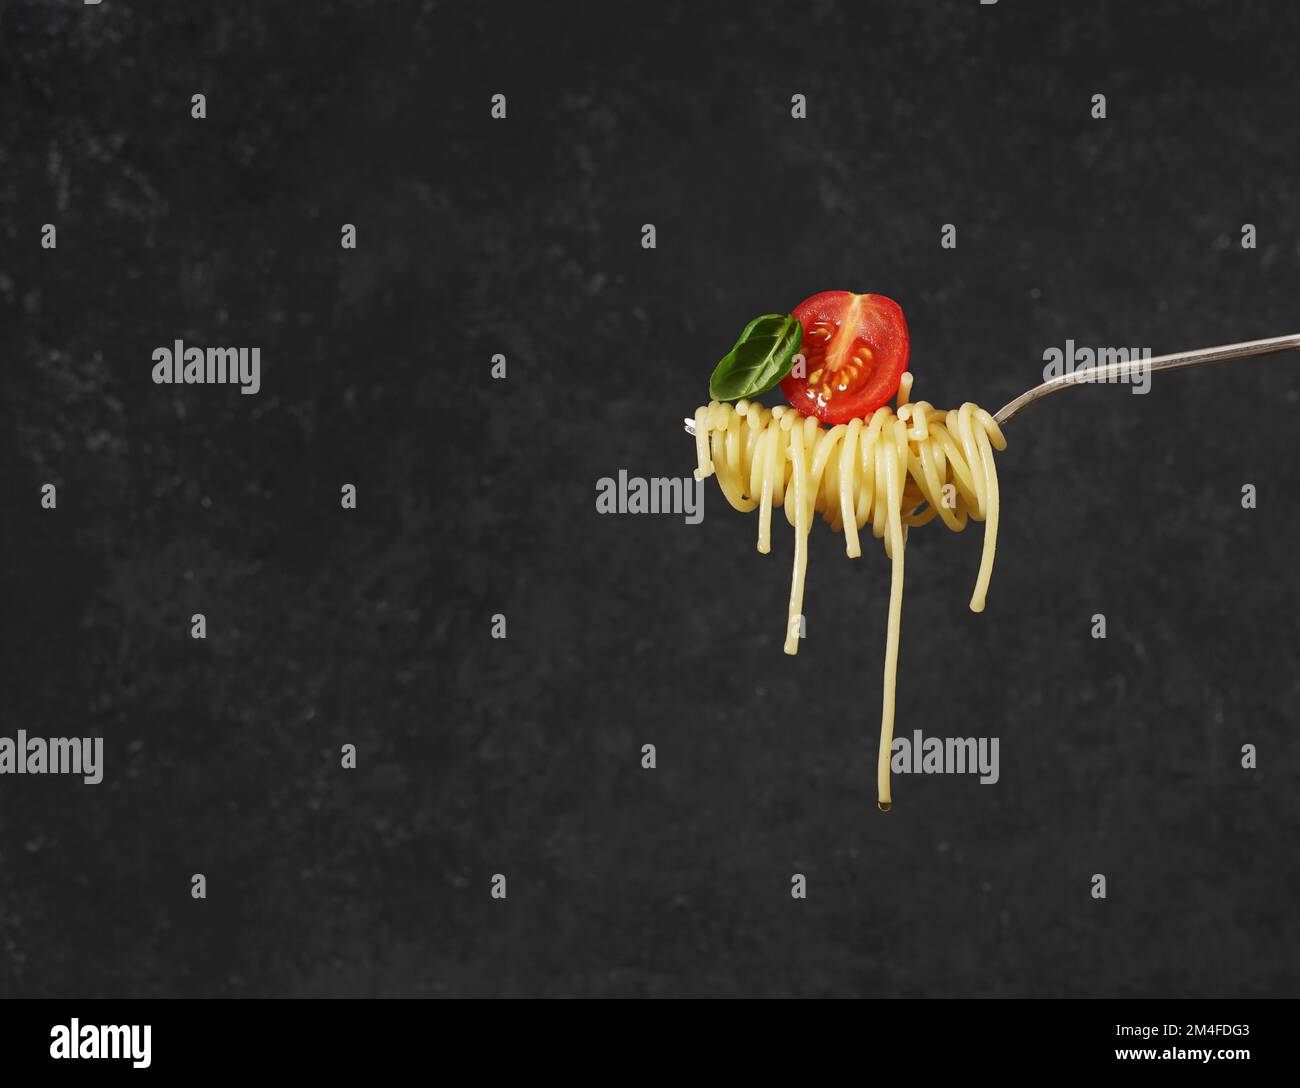 Spaghetti longs jaunes sur une fourchette avec une feuille de basi fourmis tomate sur fond sombre. Journée nationale des spaghettis. Concept de fond alimentaire. copier l'espace Banque D'Images